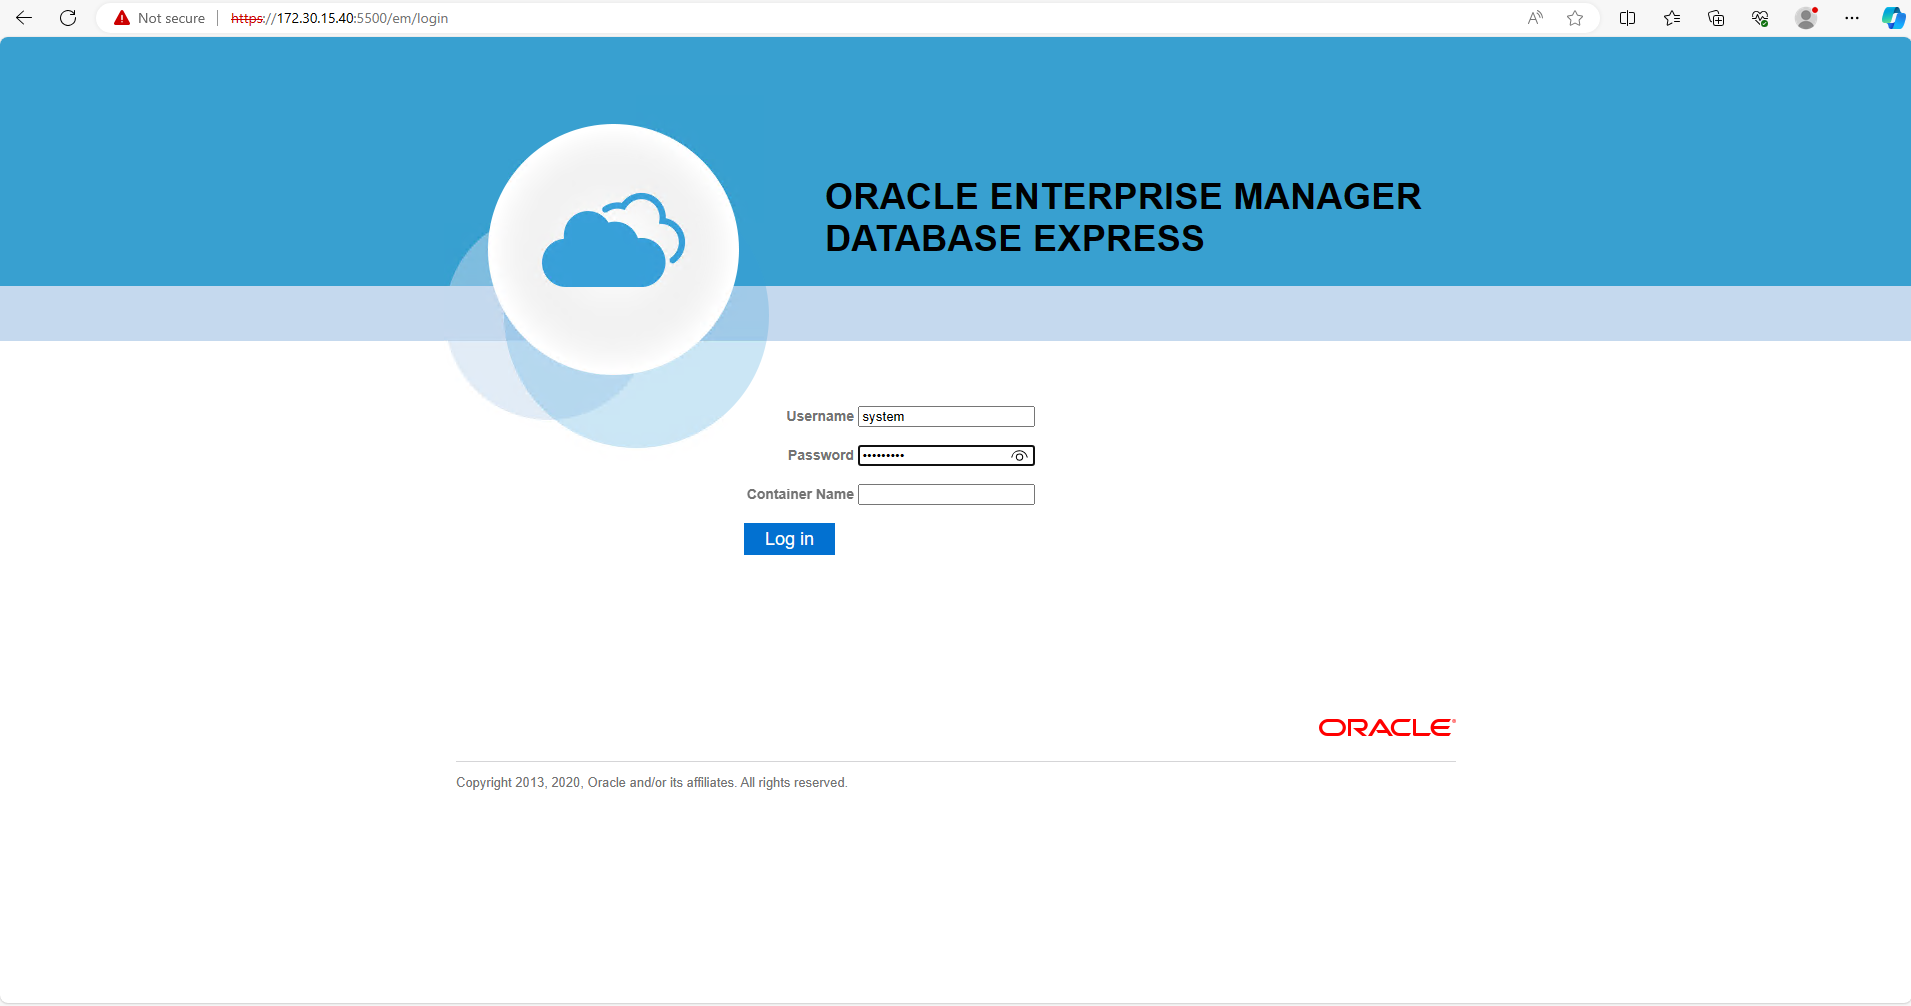 Dieses Bild zeigt den Anmeldebildschirm für Oracle Enterprise Manager Express an